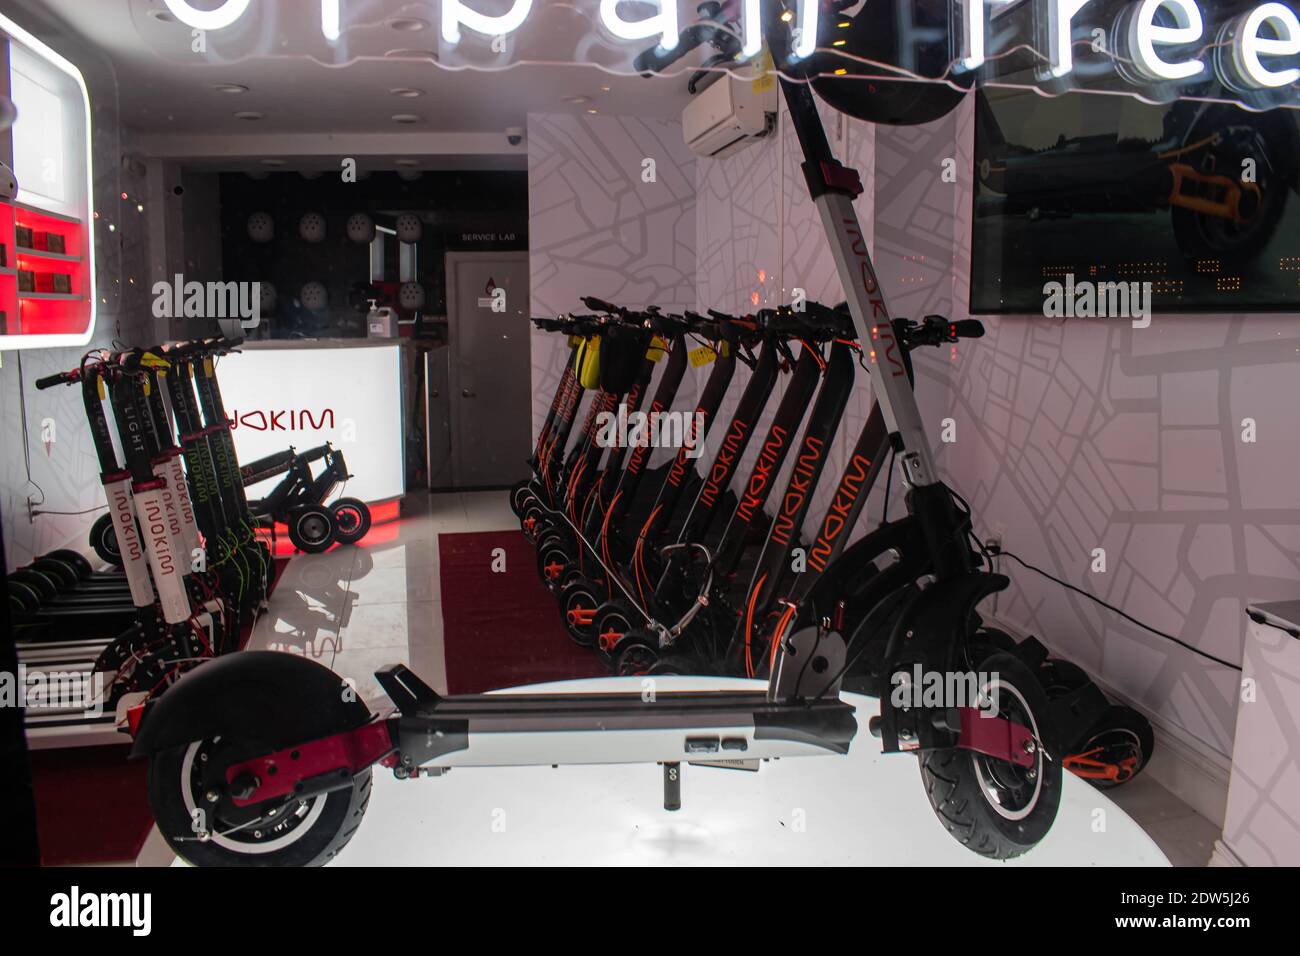 Un negozio di scooter Nokim cercando di vendere persone modi nuovi ed eco-friendly di ottenere luoghi a New York City. Foto Stock